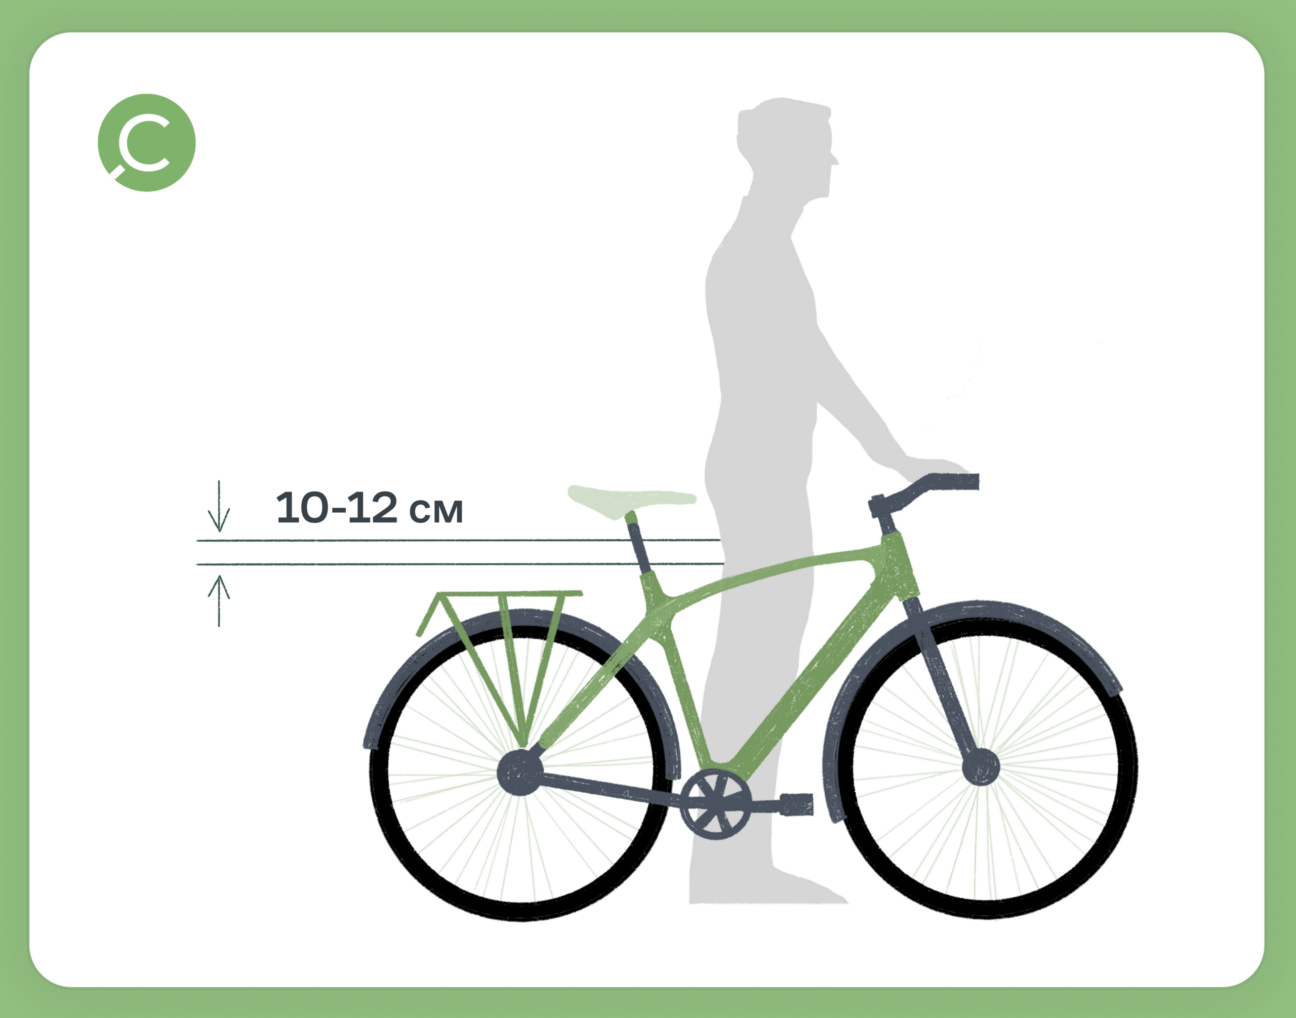 Когда ездок стоит рядом с велосипедом, от рамы до промежности должно быть расстояние 10–12 см